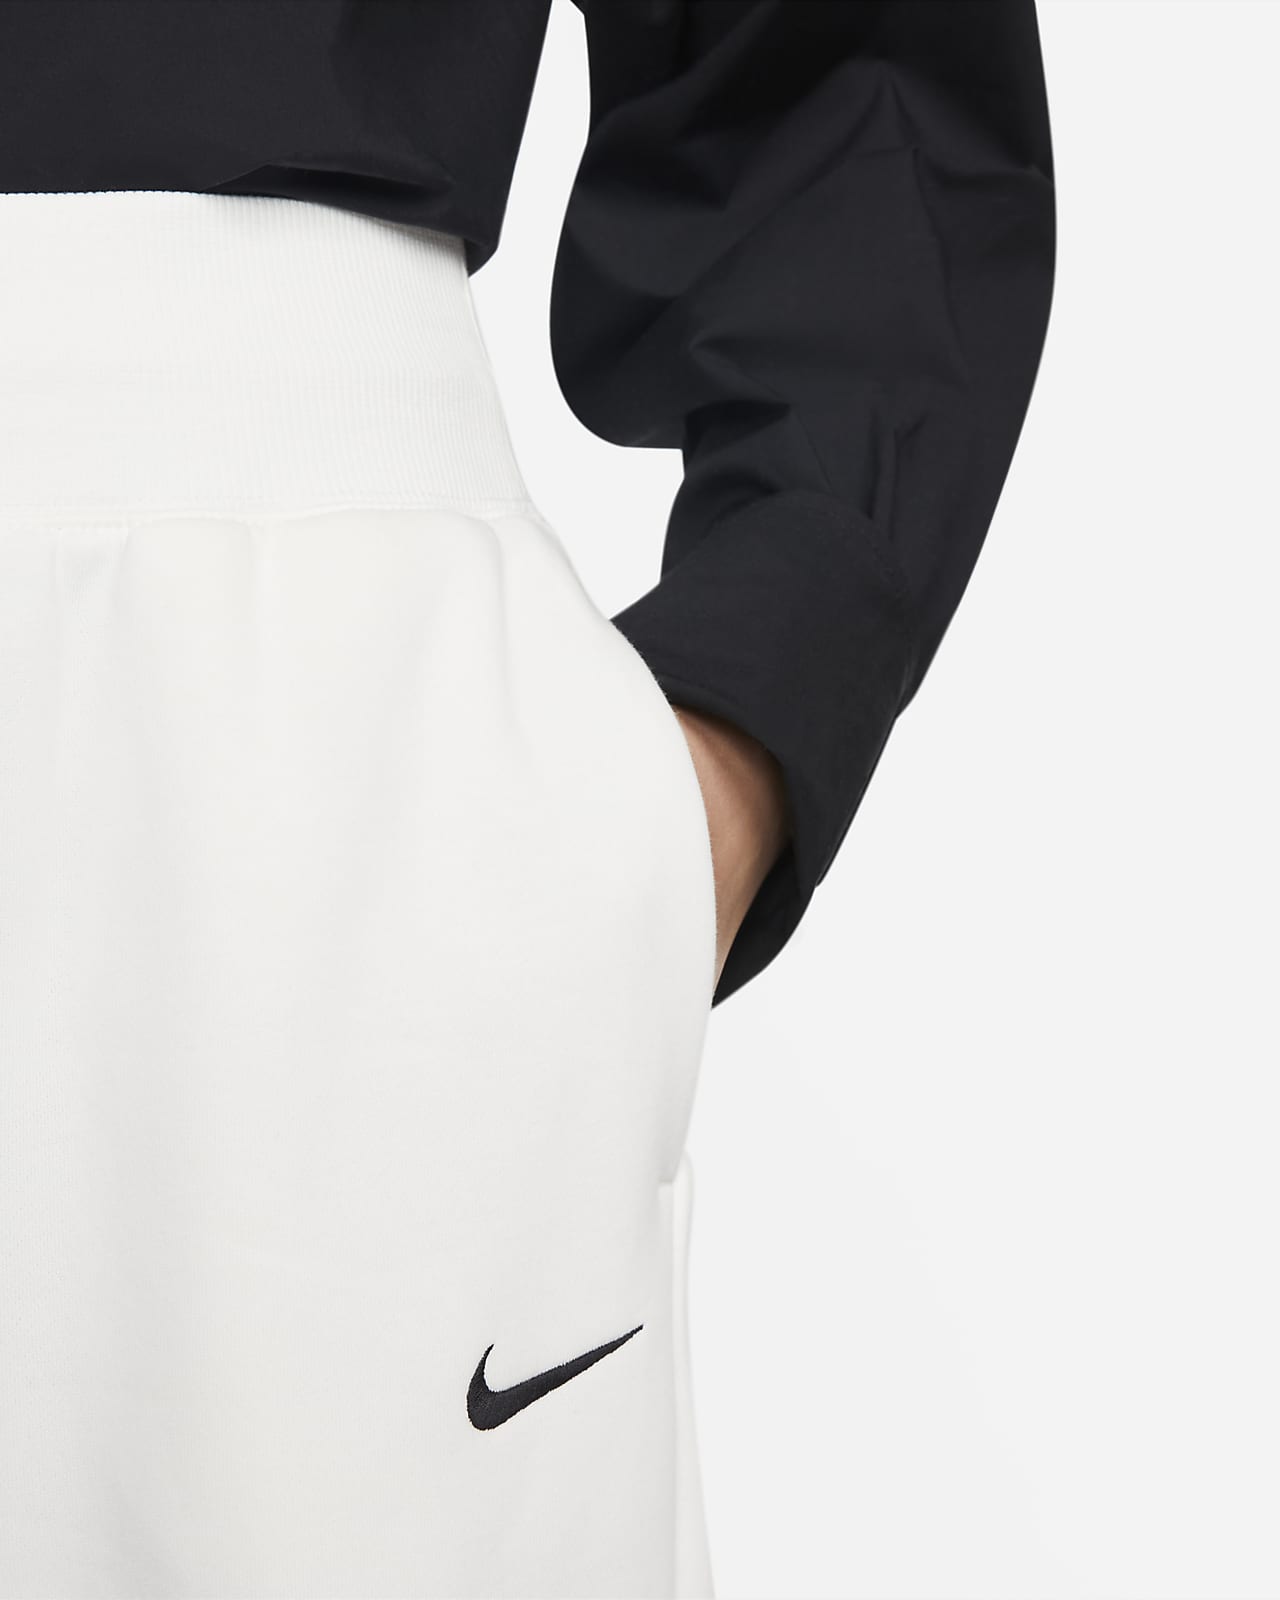 Nike Sportswear Phoenix Fleece Women's High-Waisted Oversized Tracksuit ...